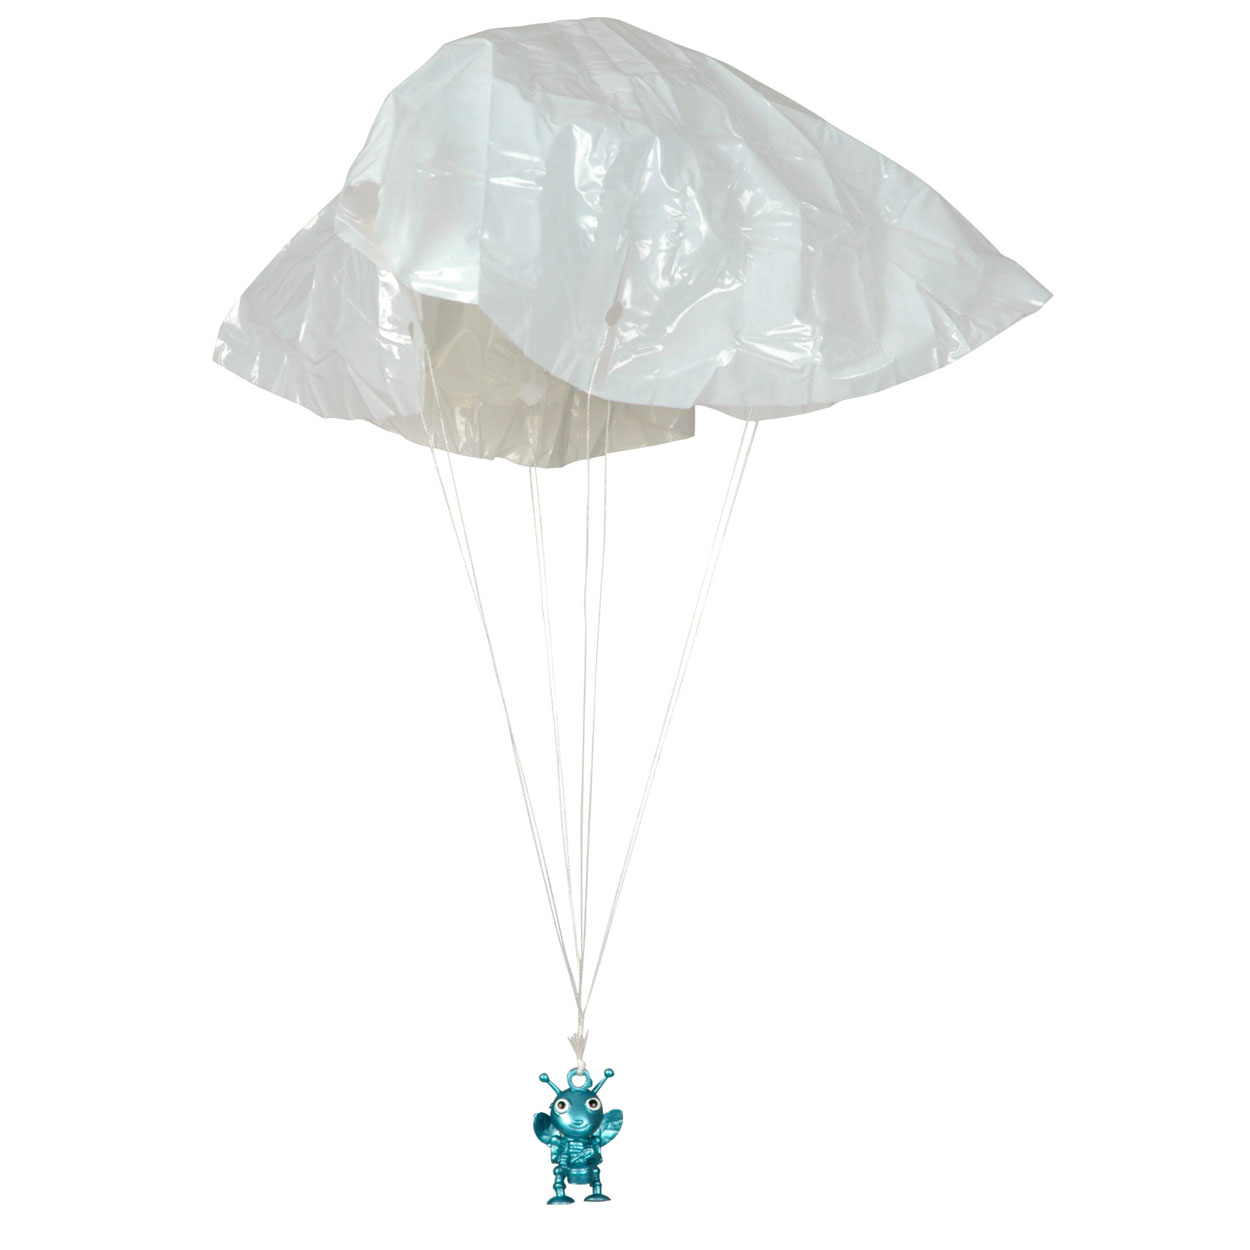 Ruimtewezen Parachutist